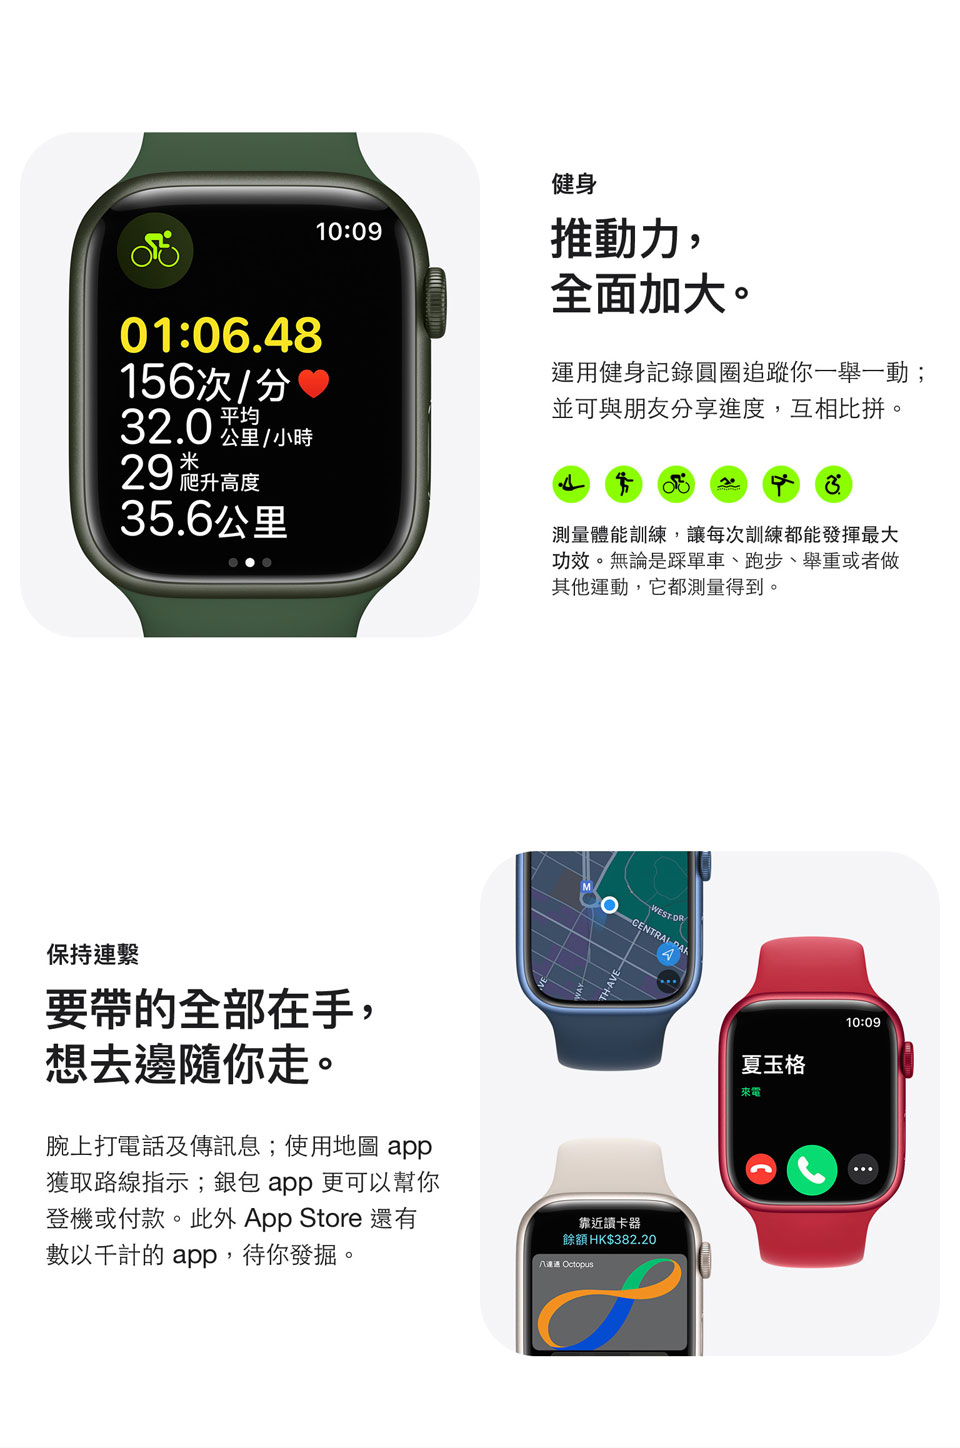 進一步了解 Apple Watch Series 7